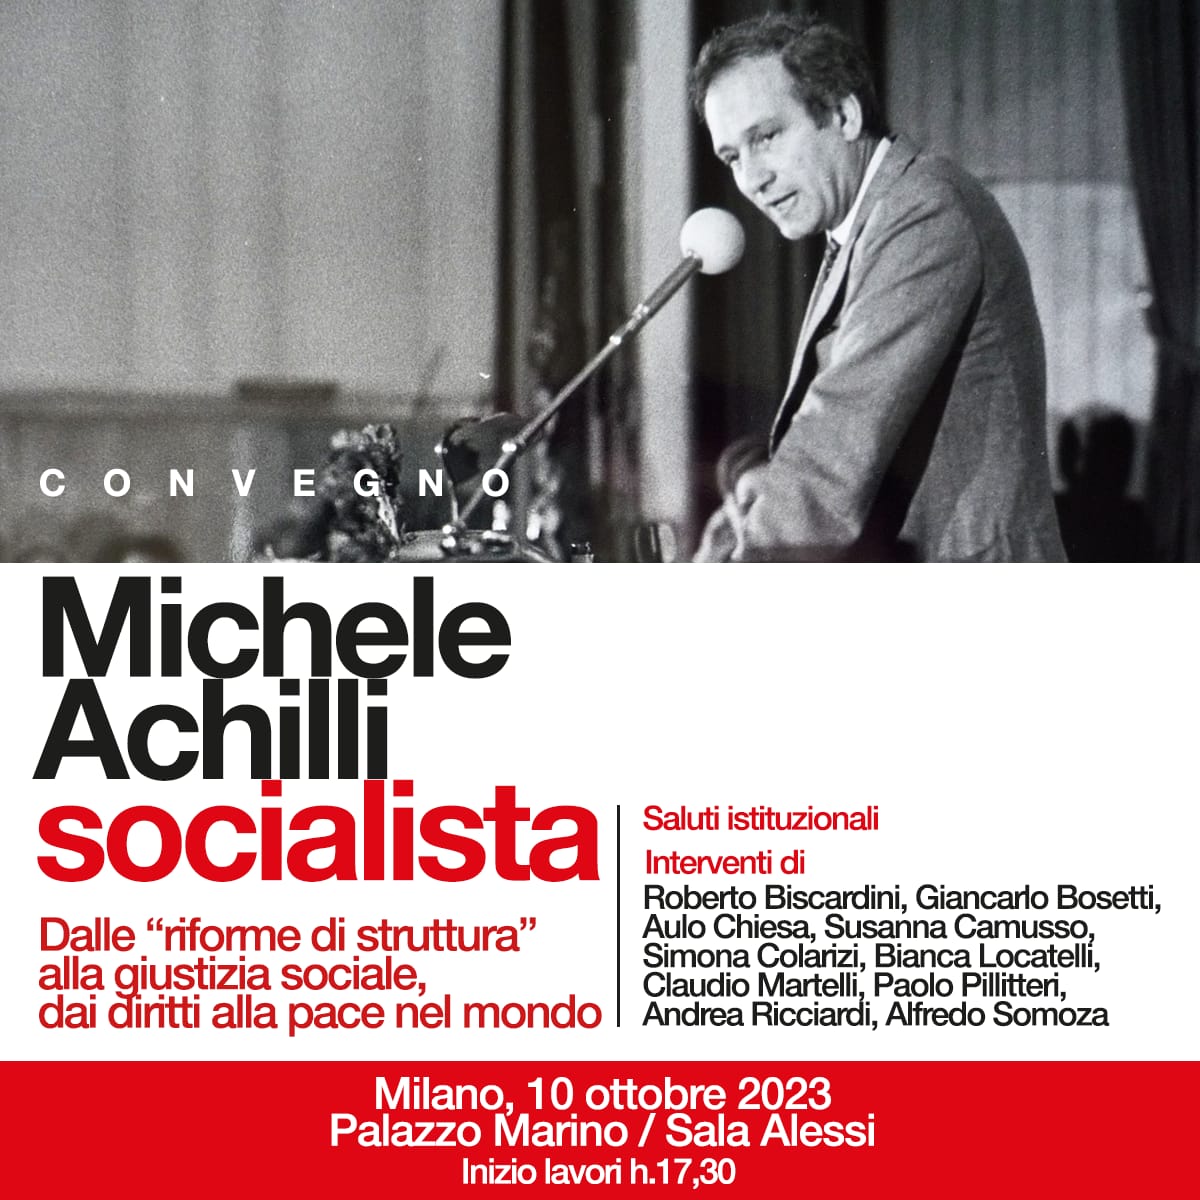 Michele Achilli, socialista